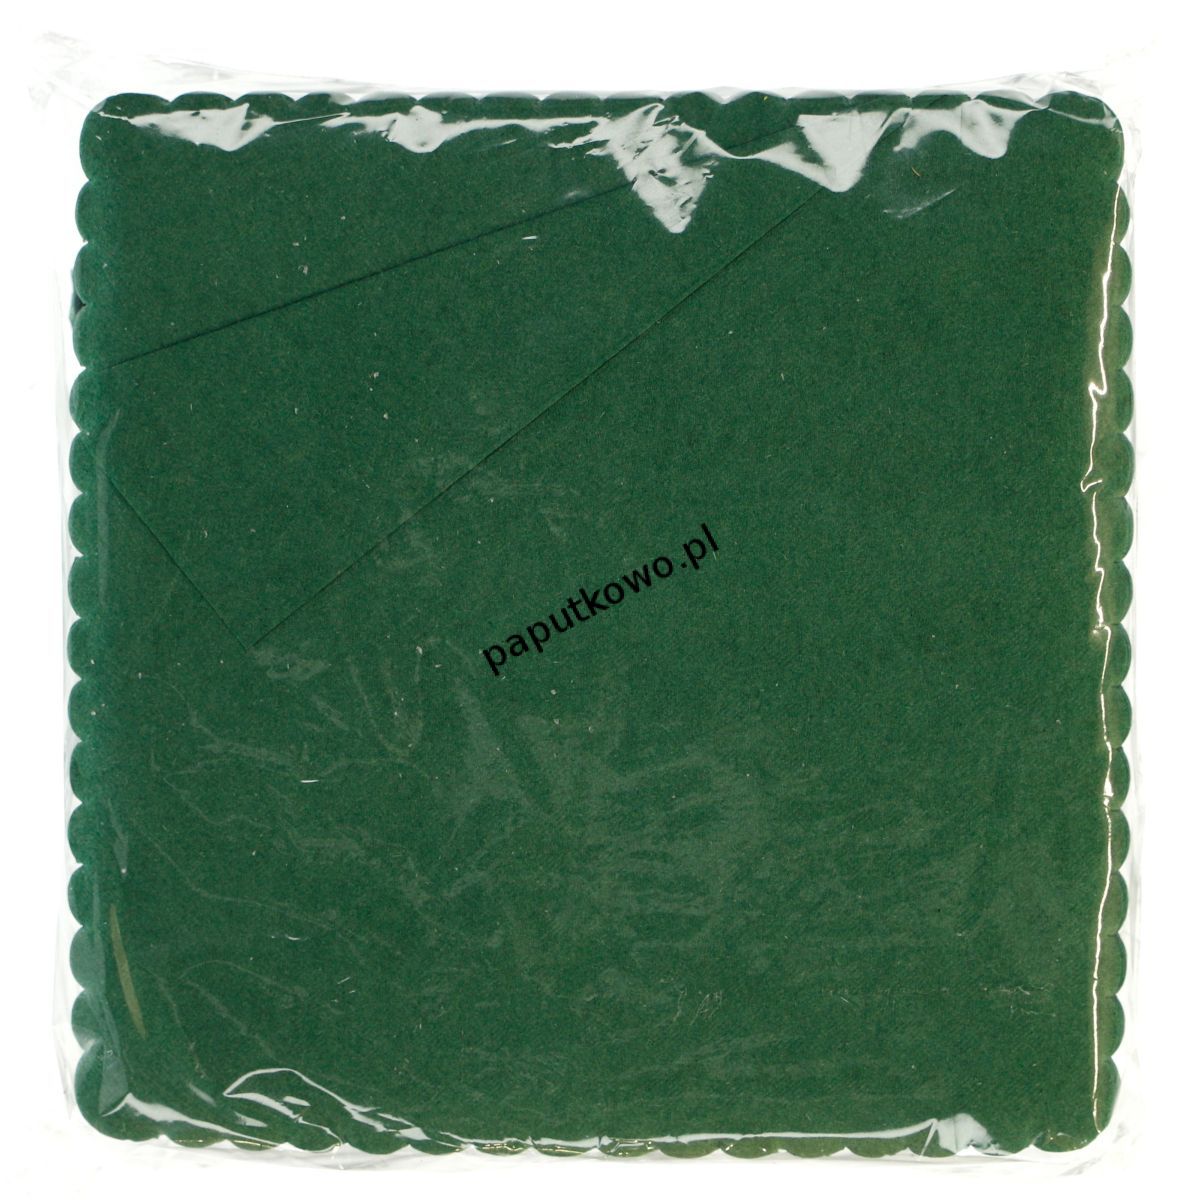 Serwetki Saba kolor: zielony 170 mm x 170 mm (K 400 17)